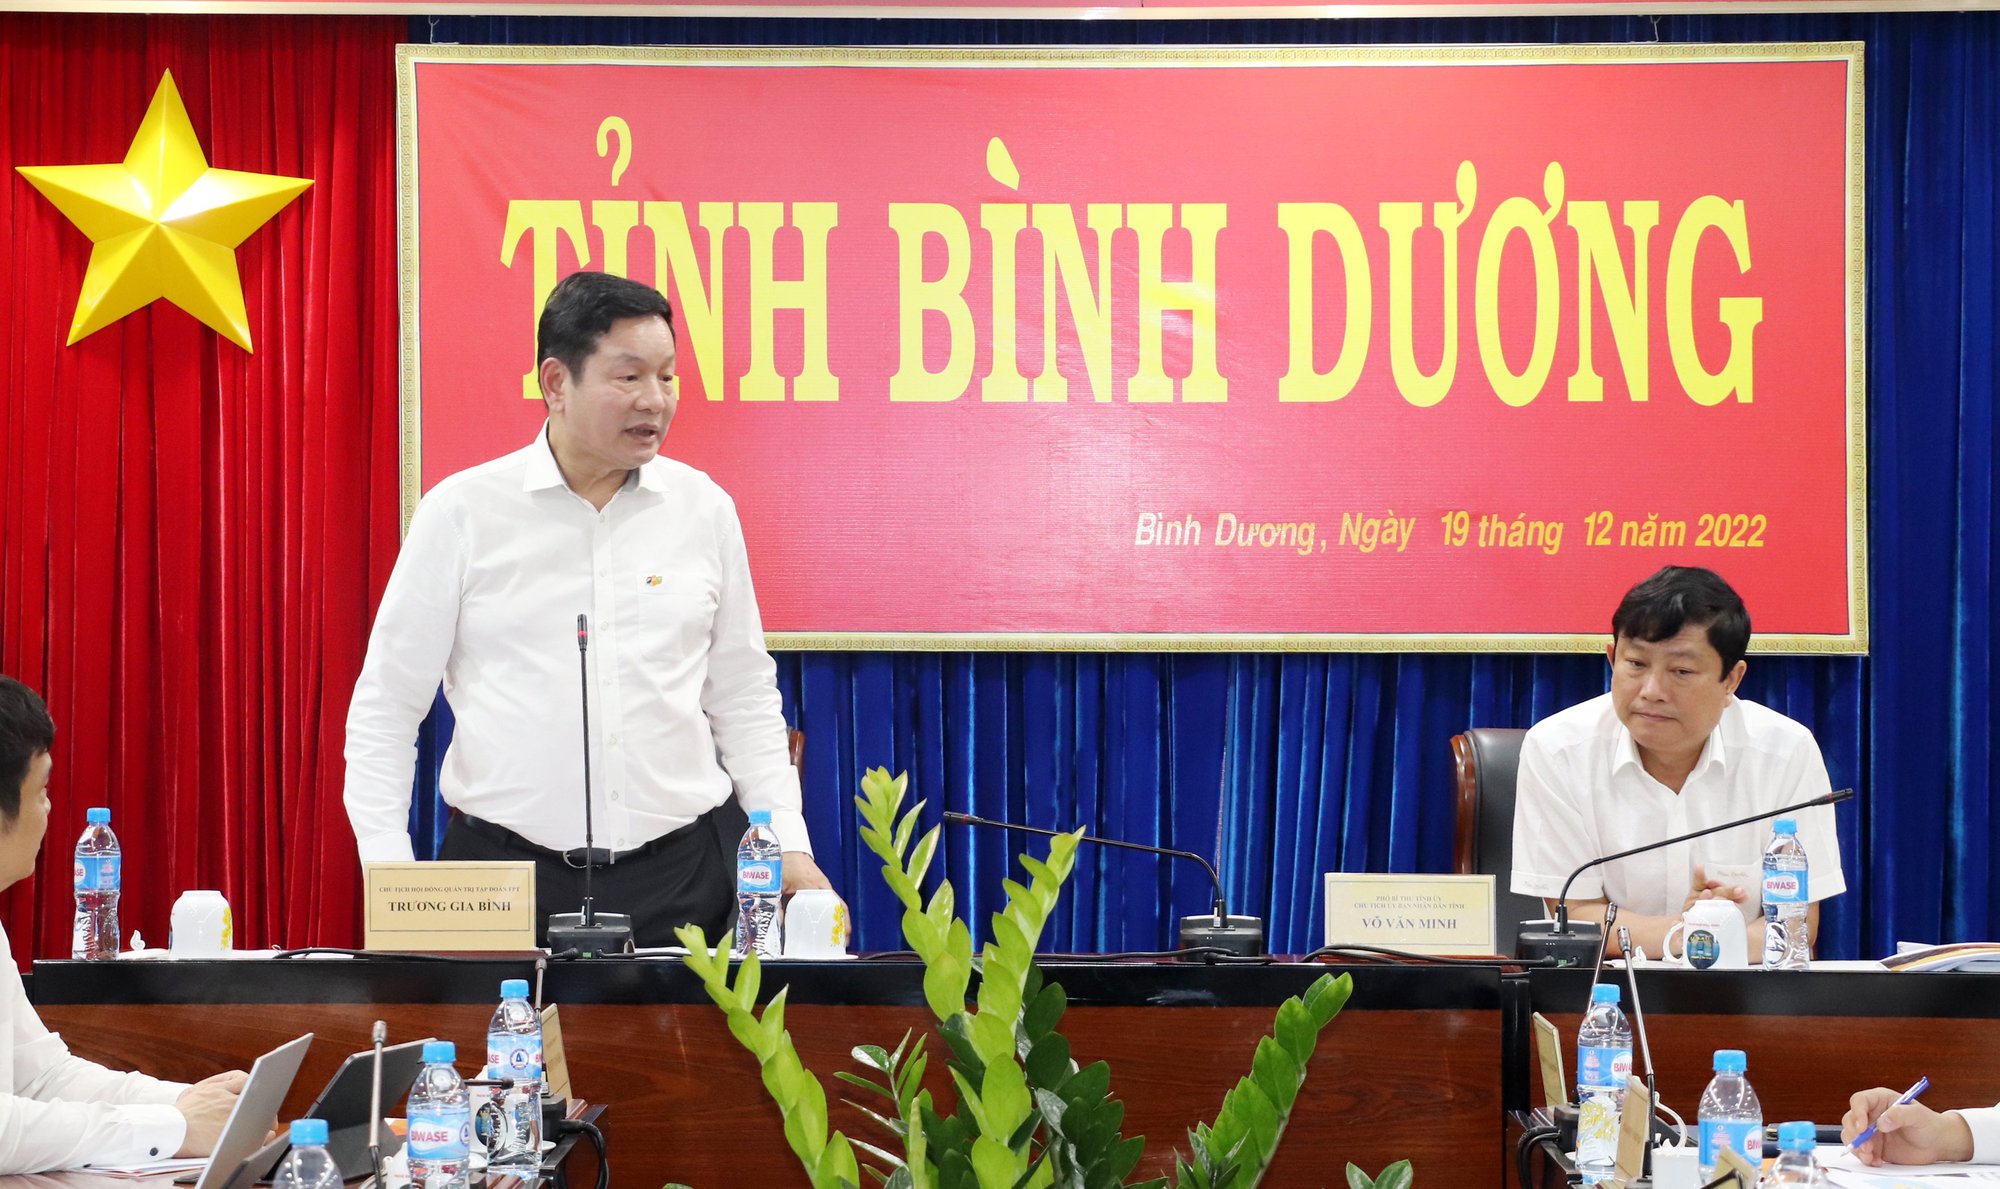 Ông Trương Gia Bình, Chủ tịch FPT chia sẻ ước vọng song hành cùng Bình Dương.